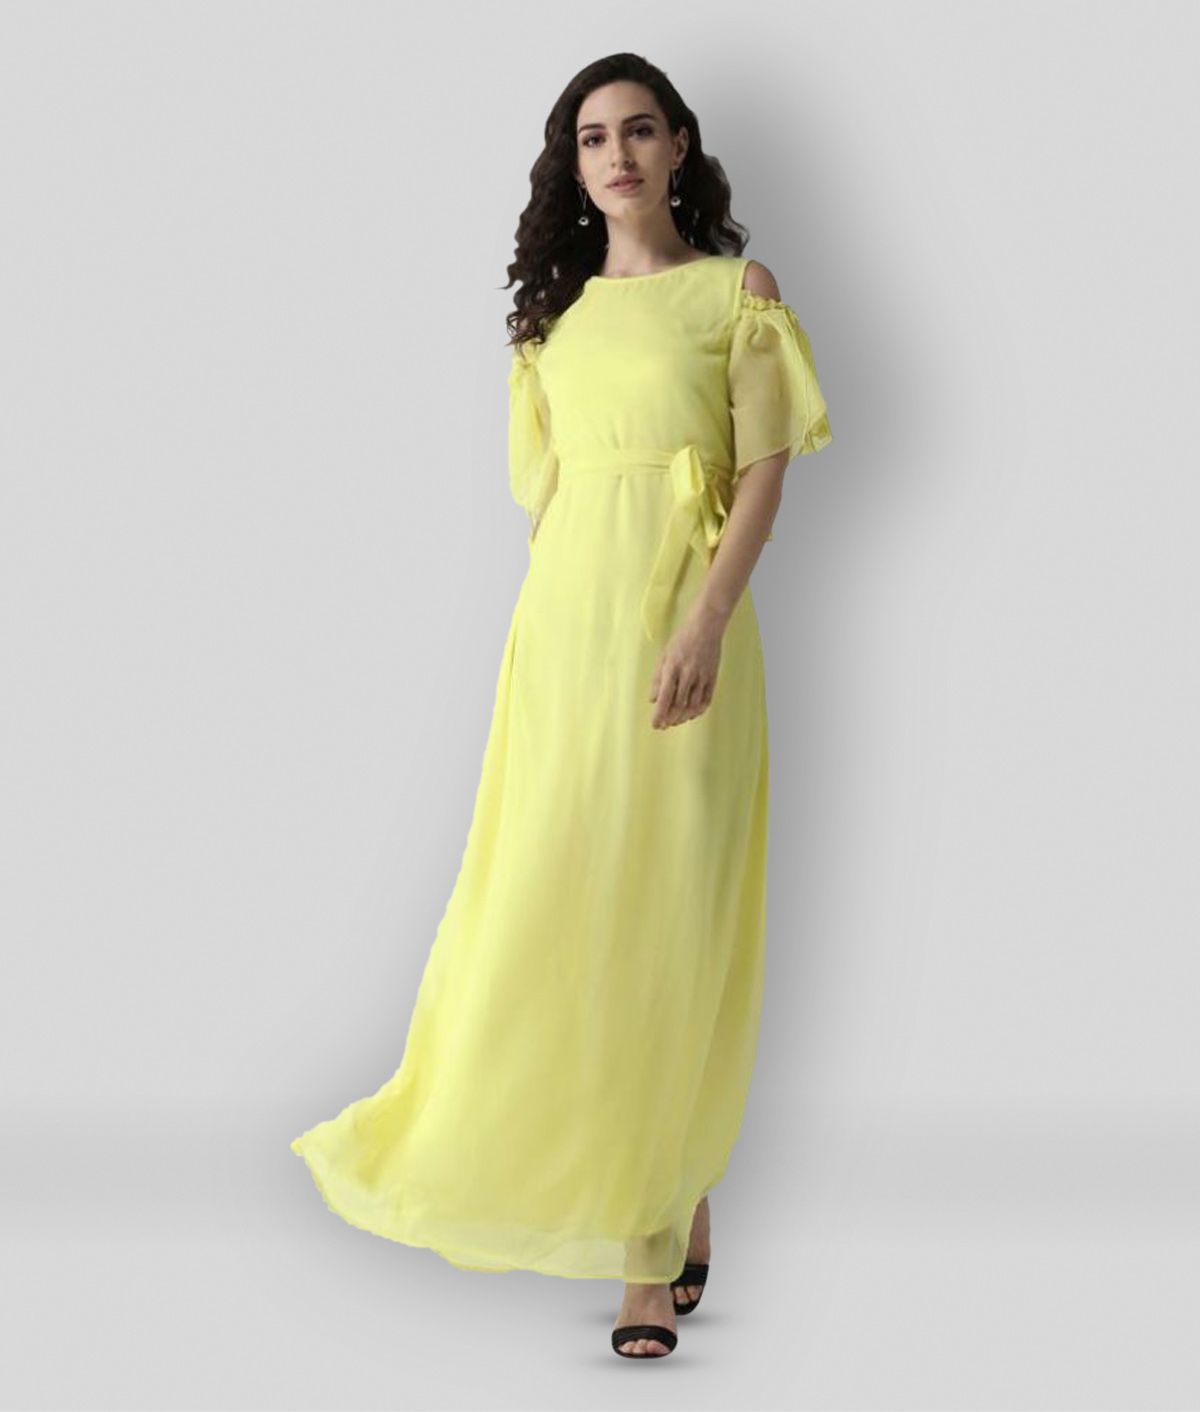 La Zoire - Yellow Georgette Women's A-line Dress ( Pack of 1 )